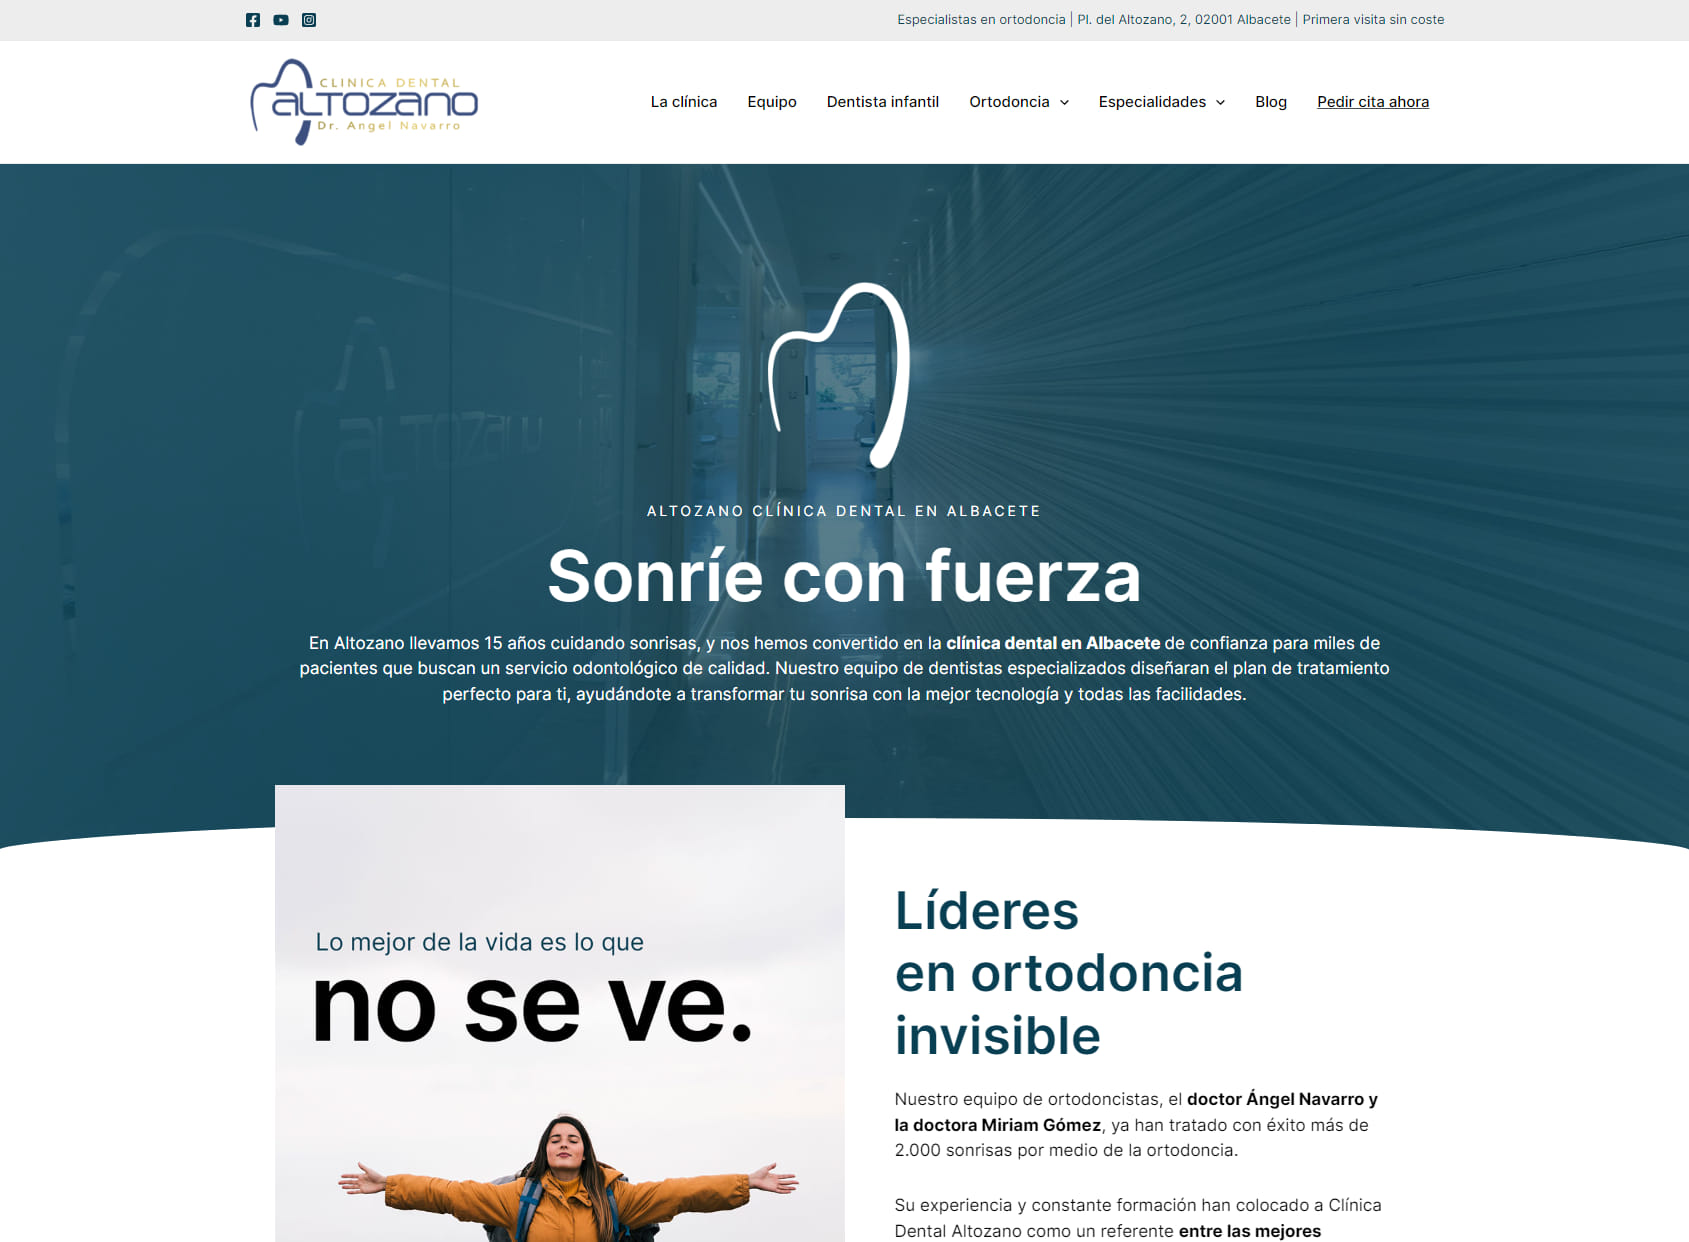 Clínica Dental Altozano-Ortodoncia exclusiva- Dr. Ángel Navarro y Dra. Miriam Gómez